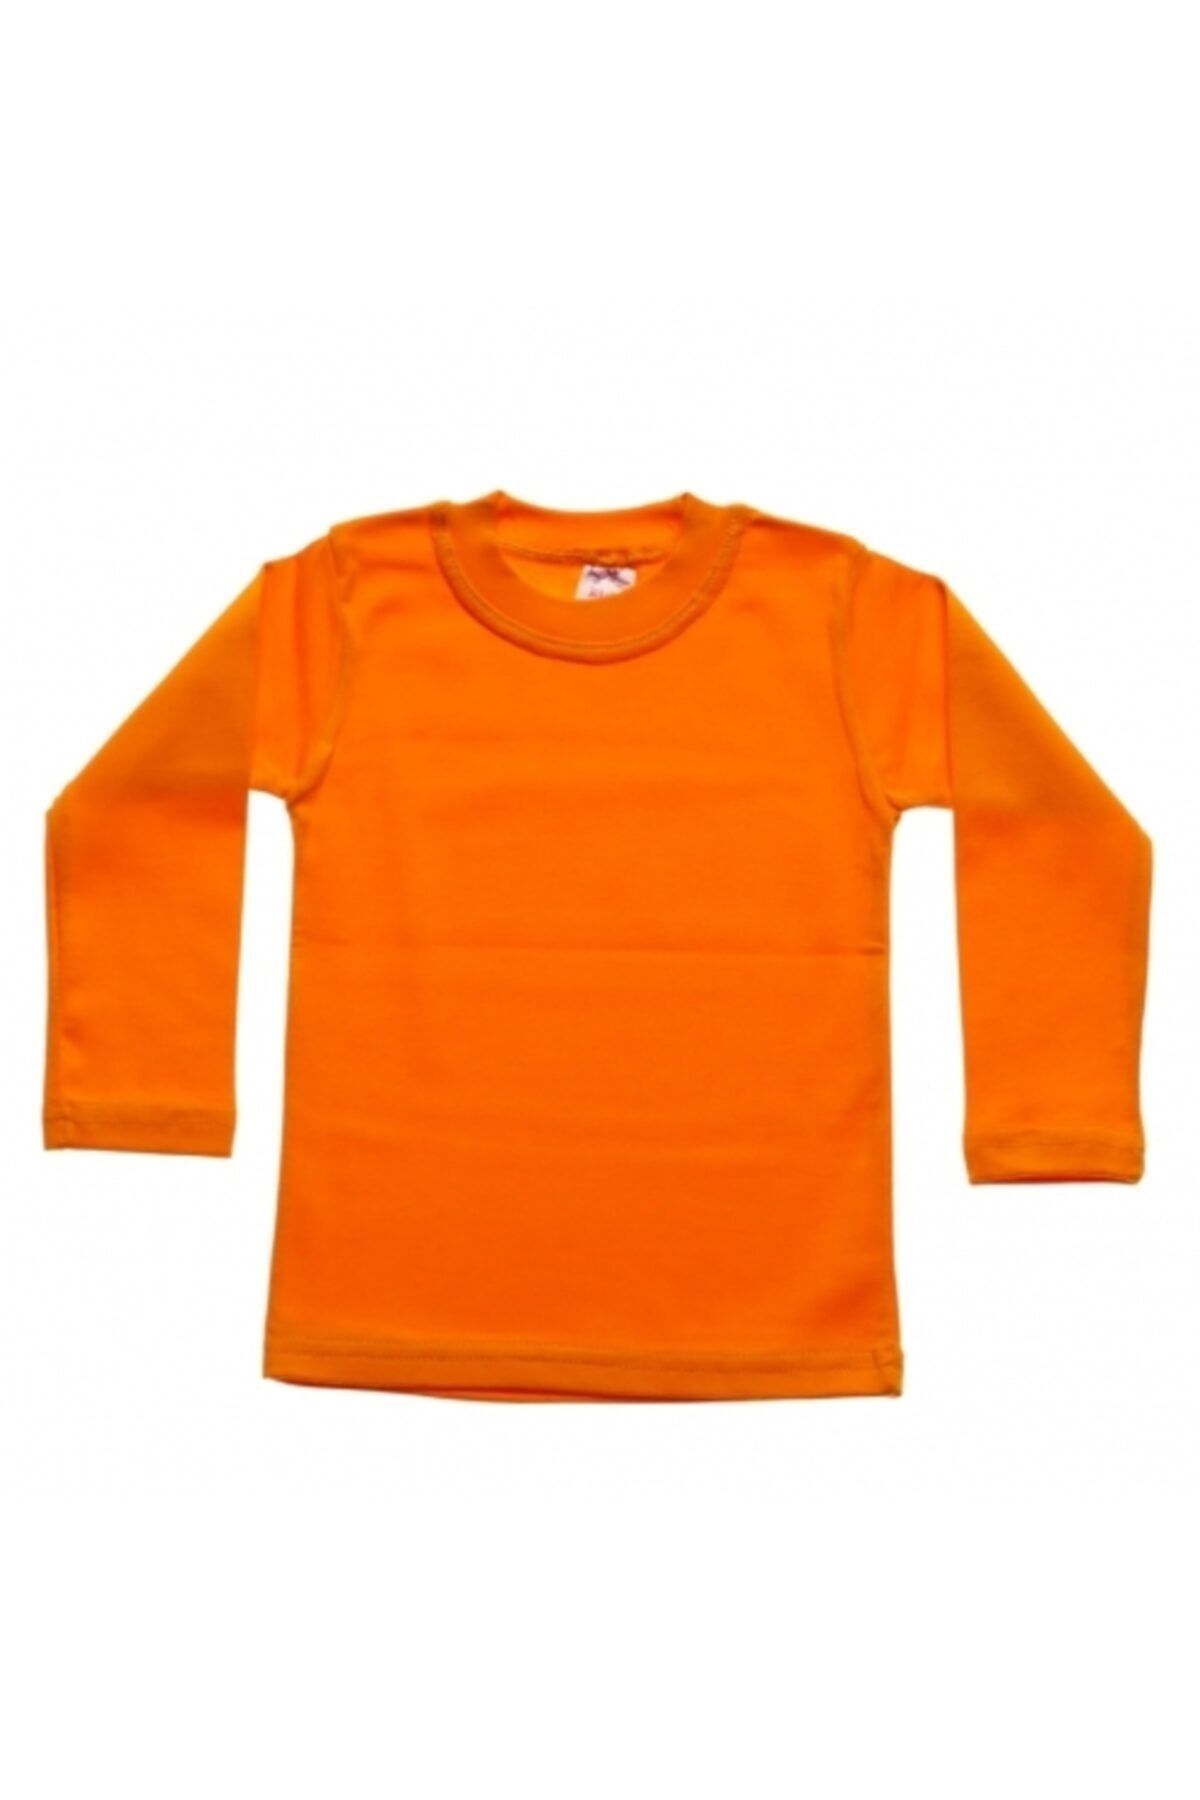 Yeni Işık Tekstil 7-8 Yaş Likralı Çocuk T-shirt & Body Turuncu